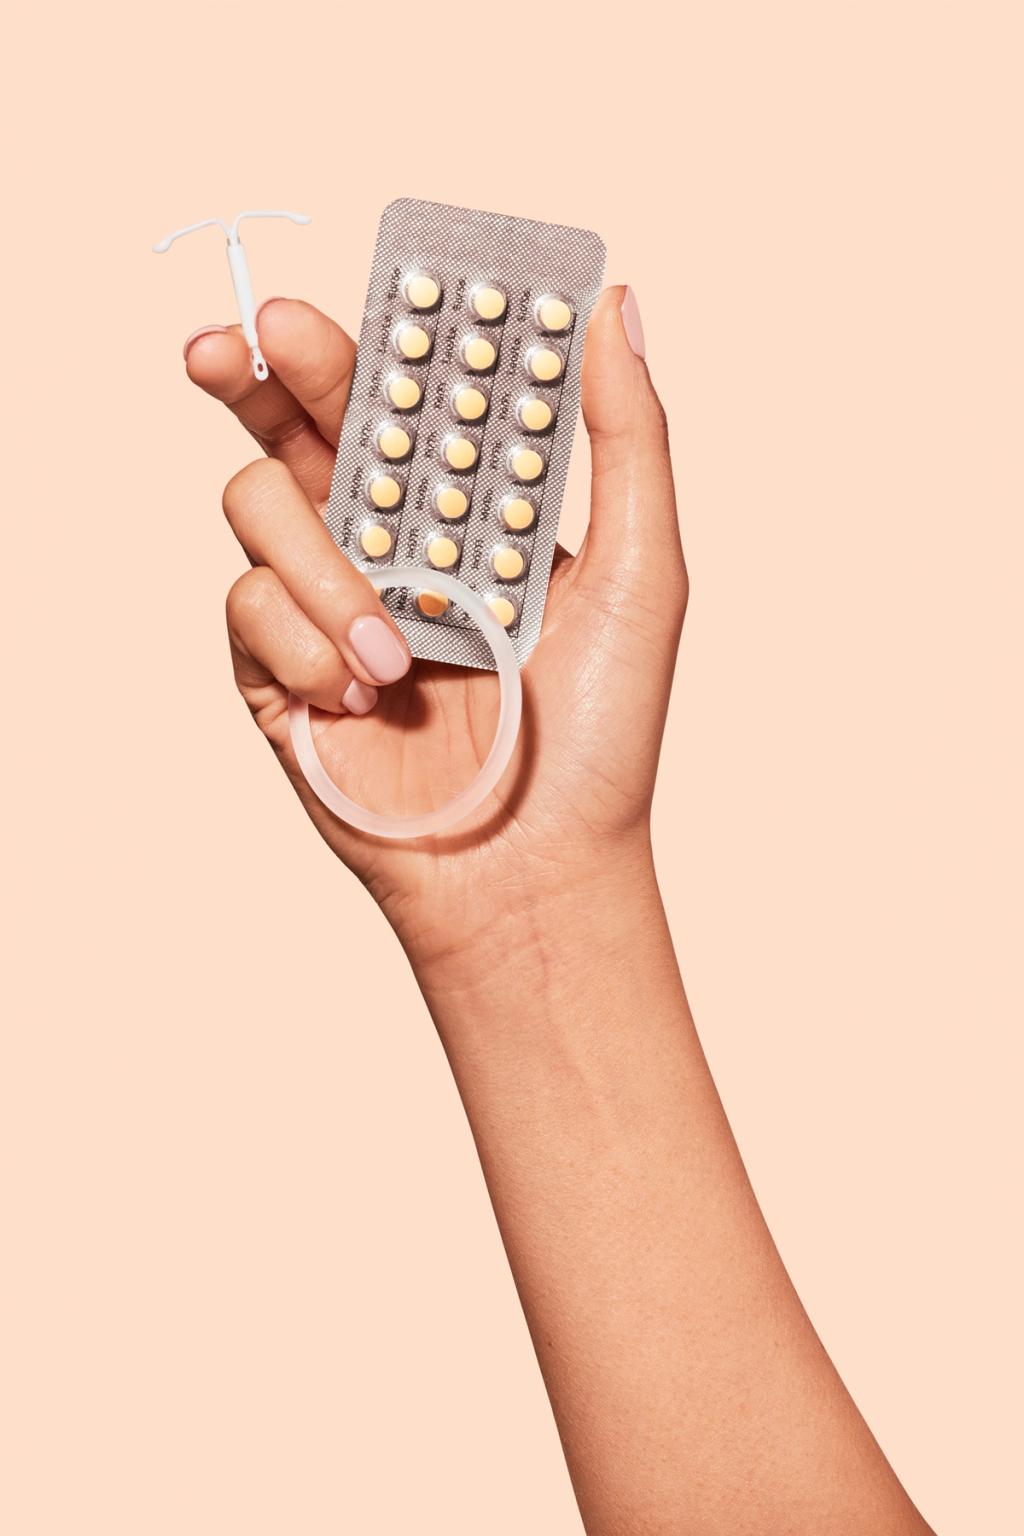 Bilde av en hånd som holder et pillebrett